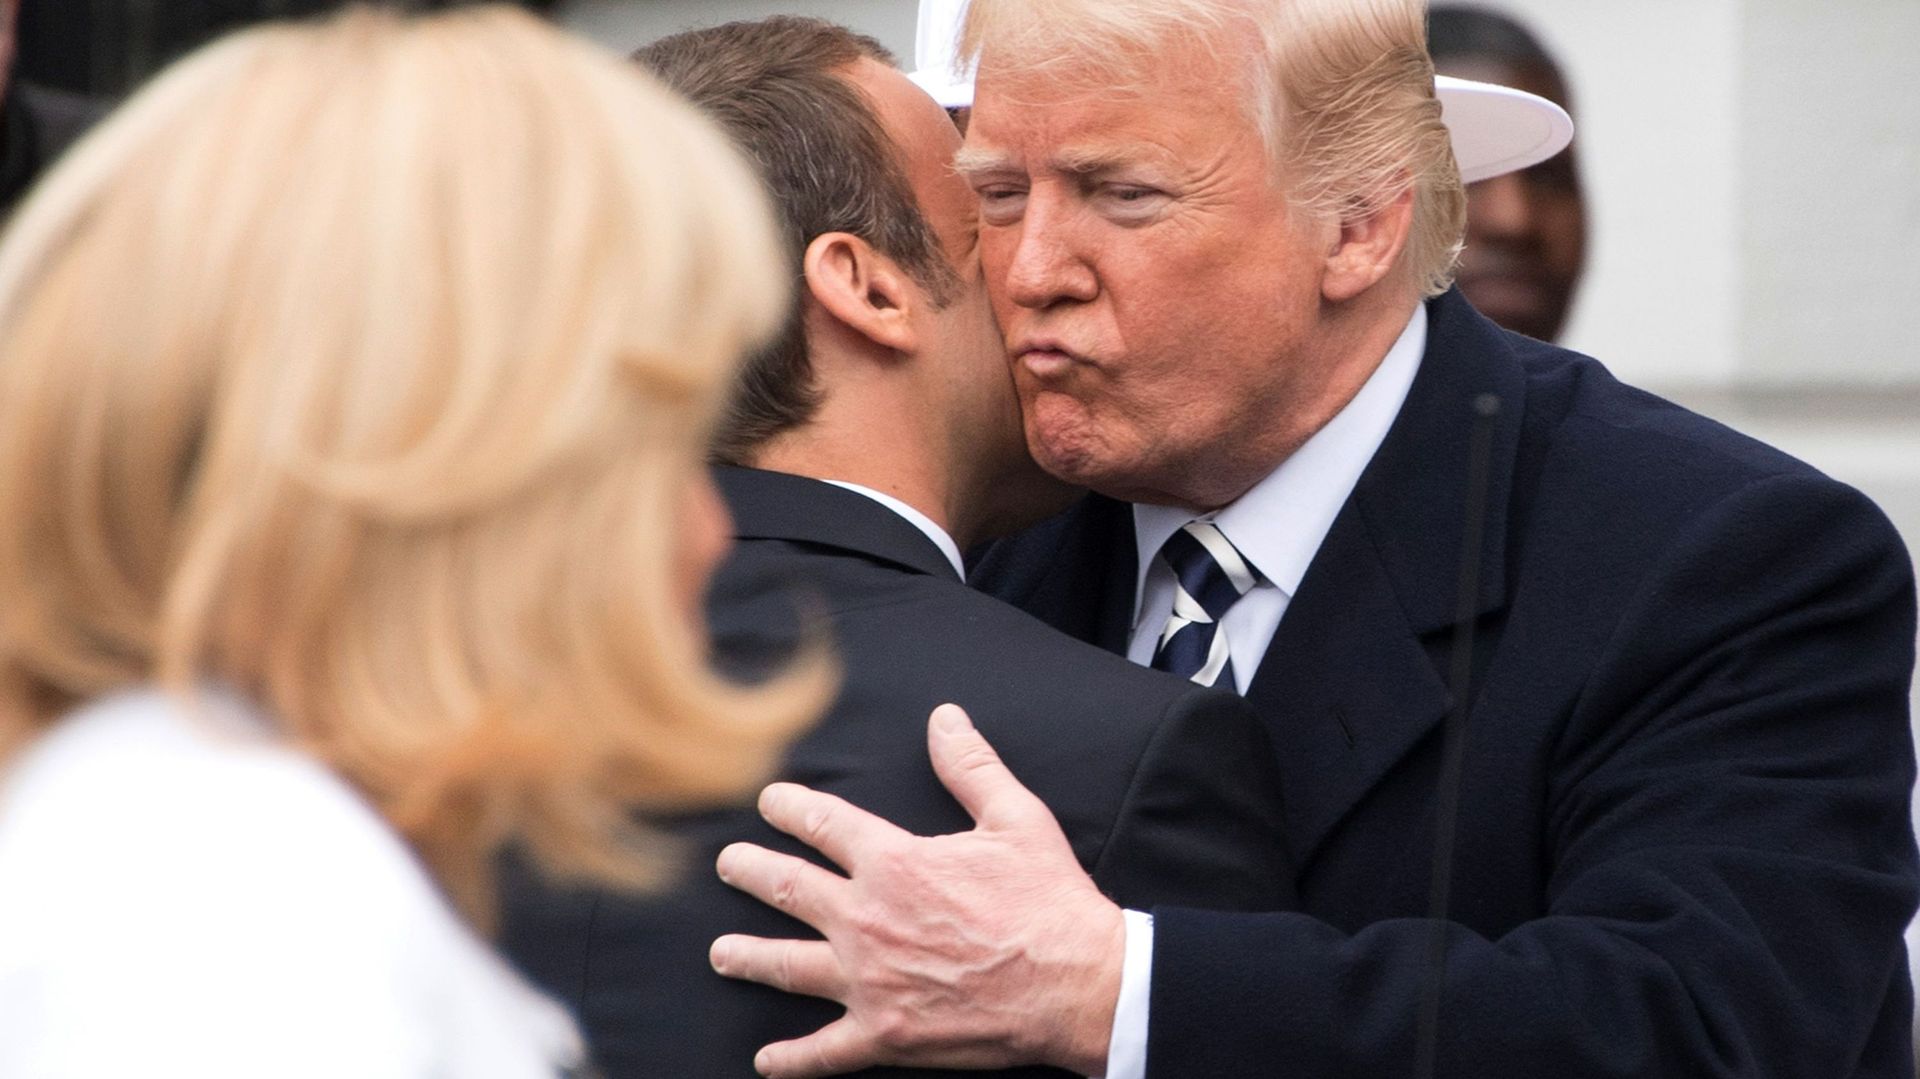 Une accolade et une bise initiée par Emmanuel Macron. Donald Trump a suivi le mouvement.